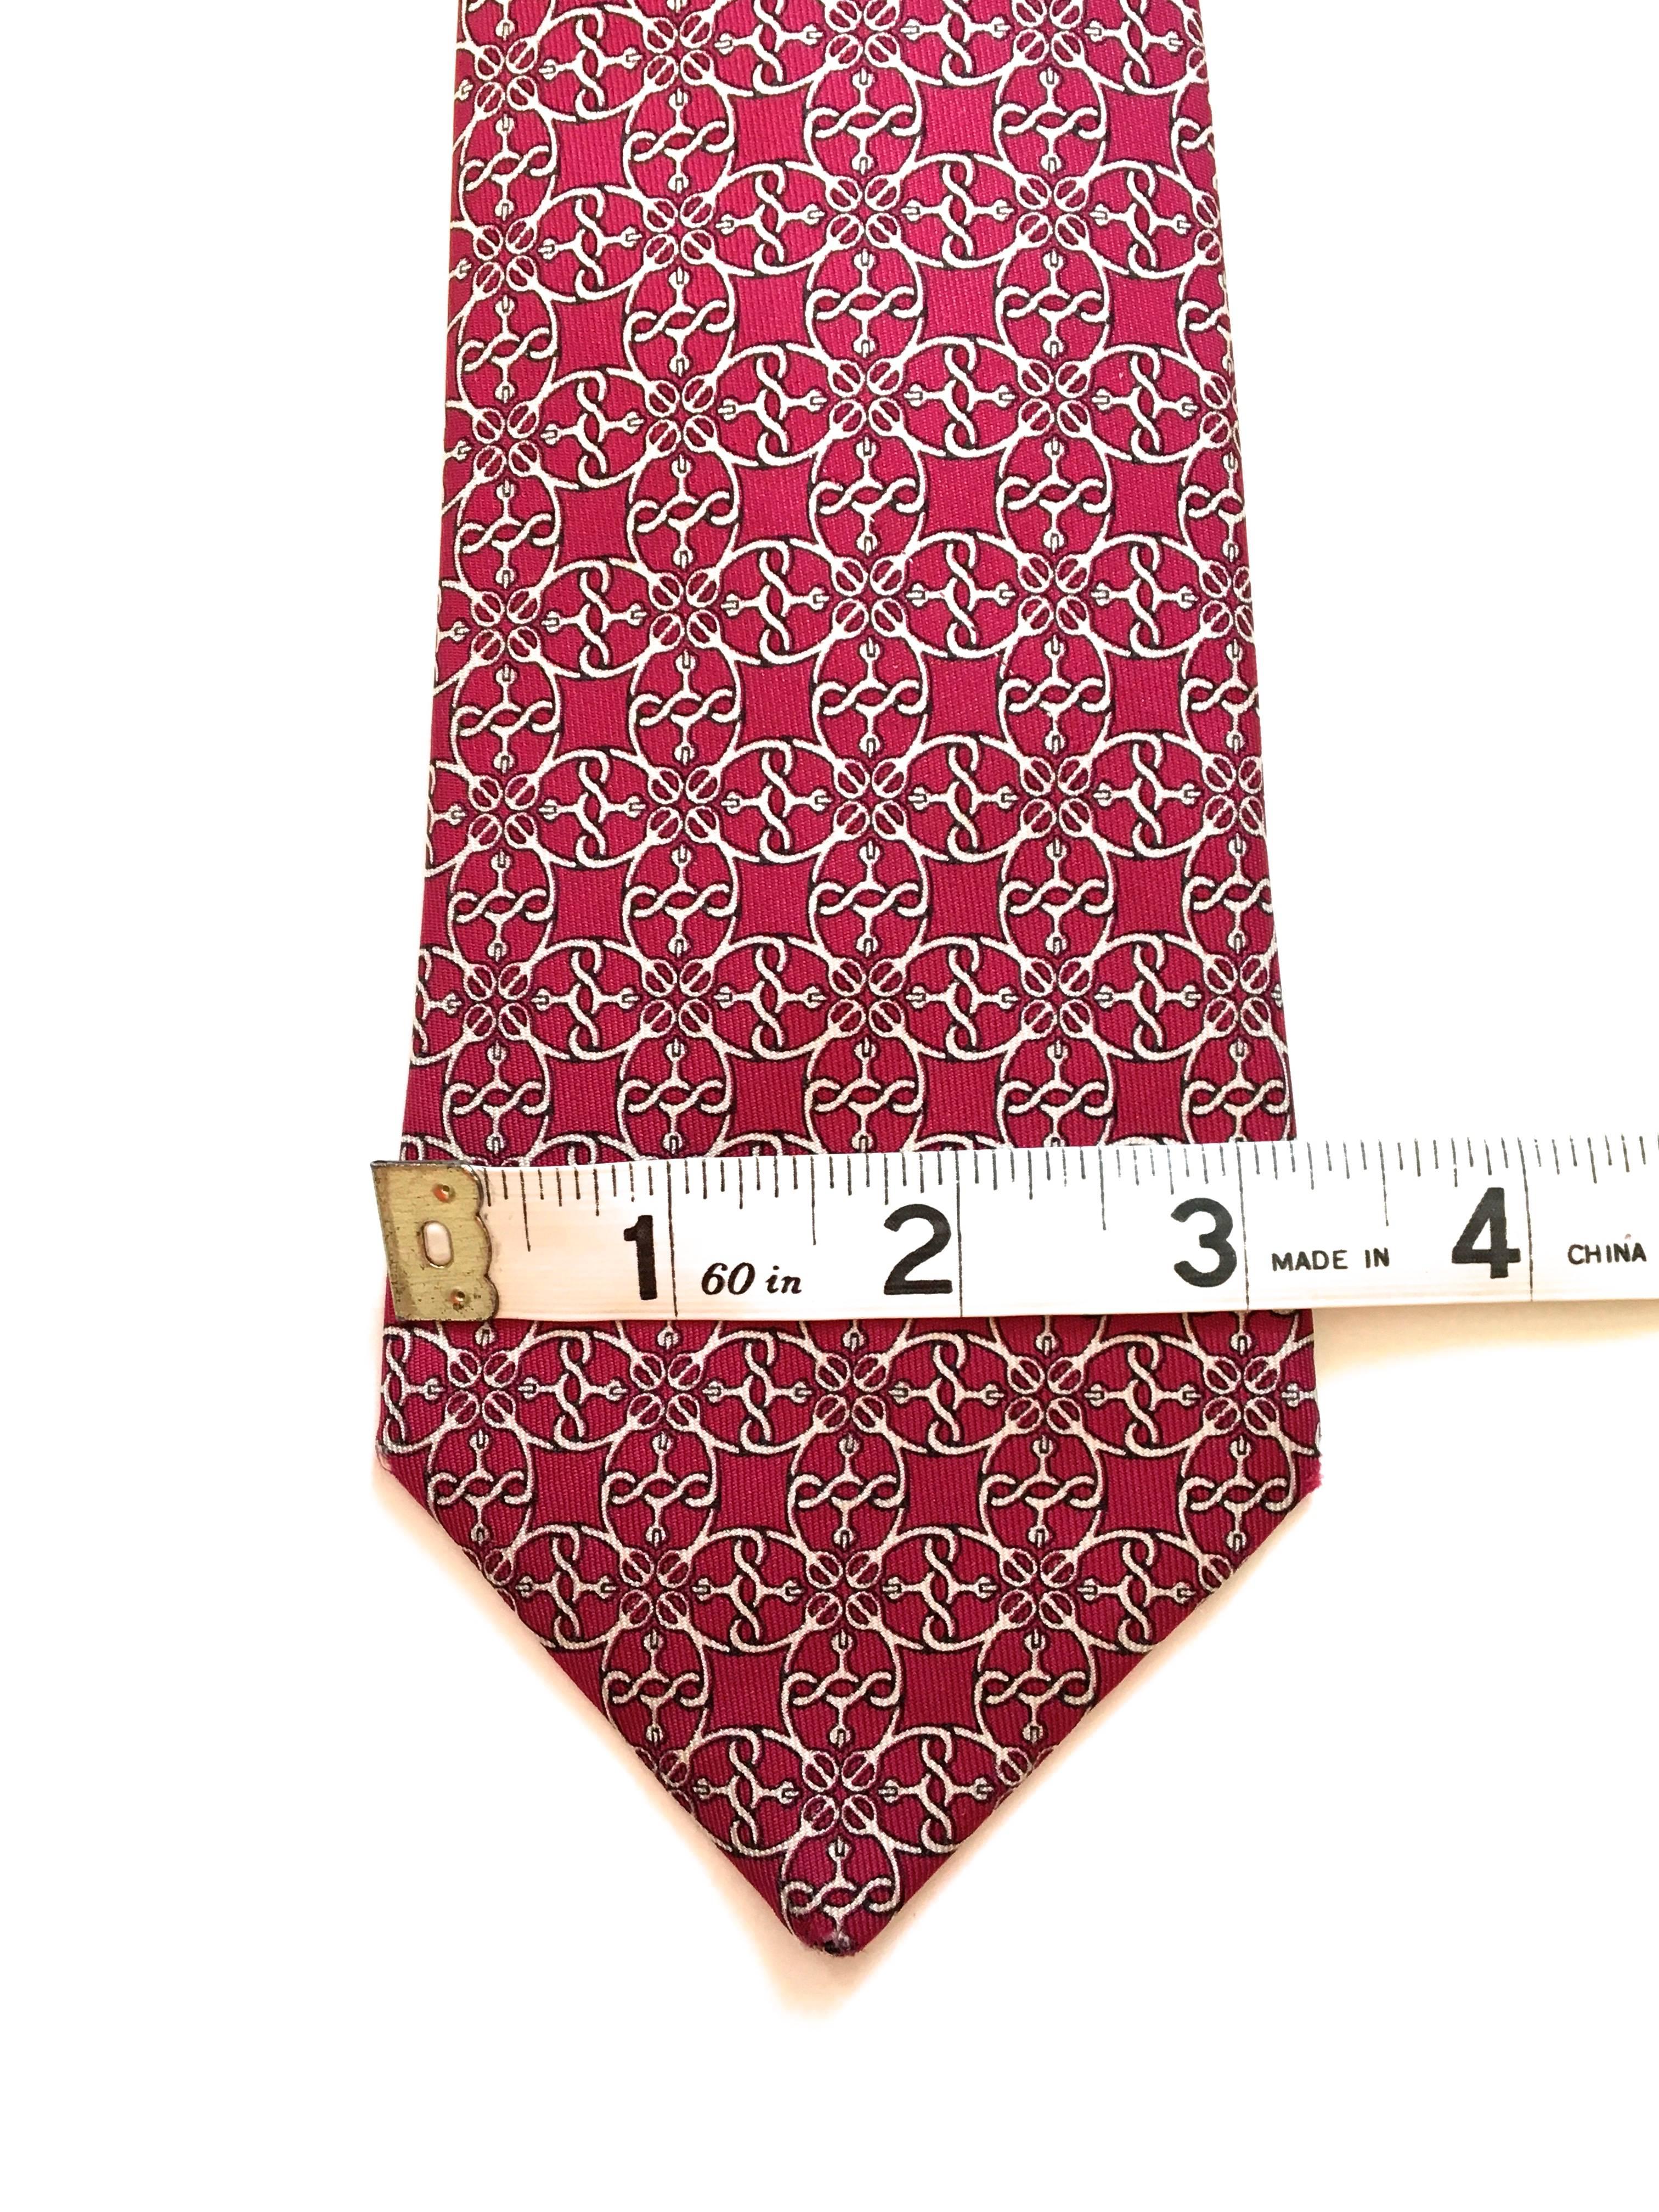 Women's or Men's Hermes Tie - 100% Silk